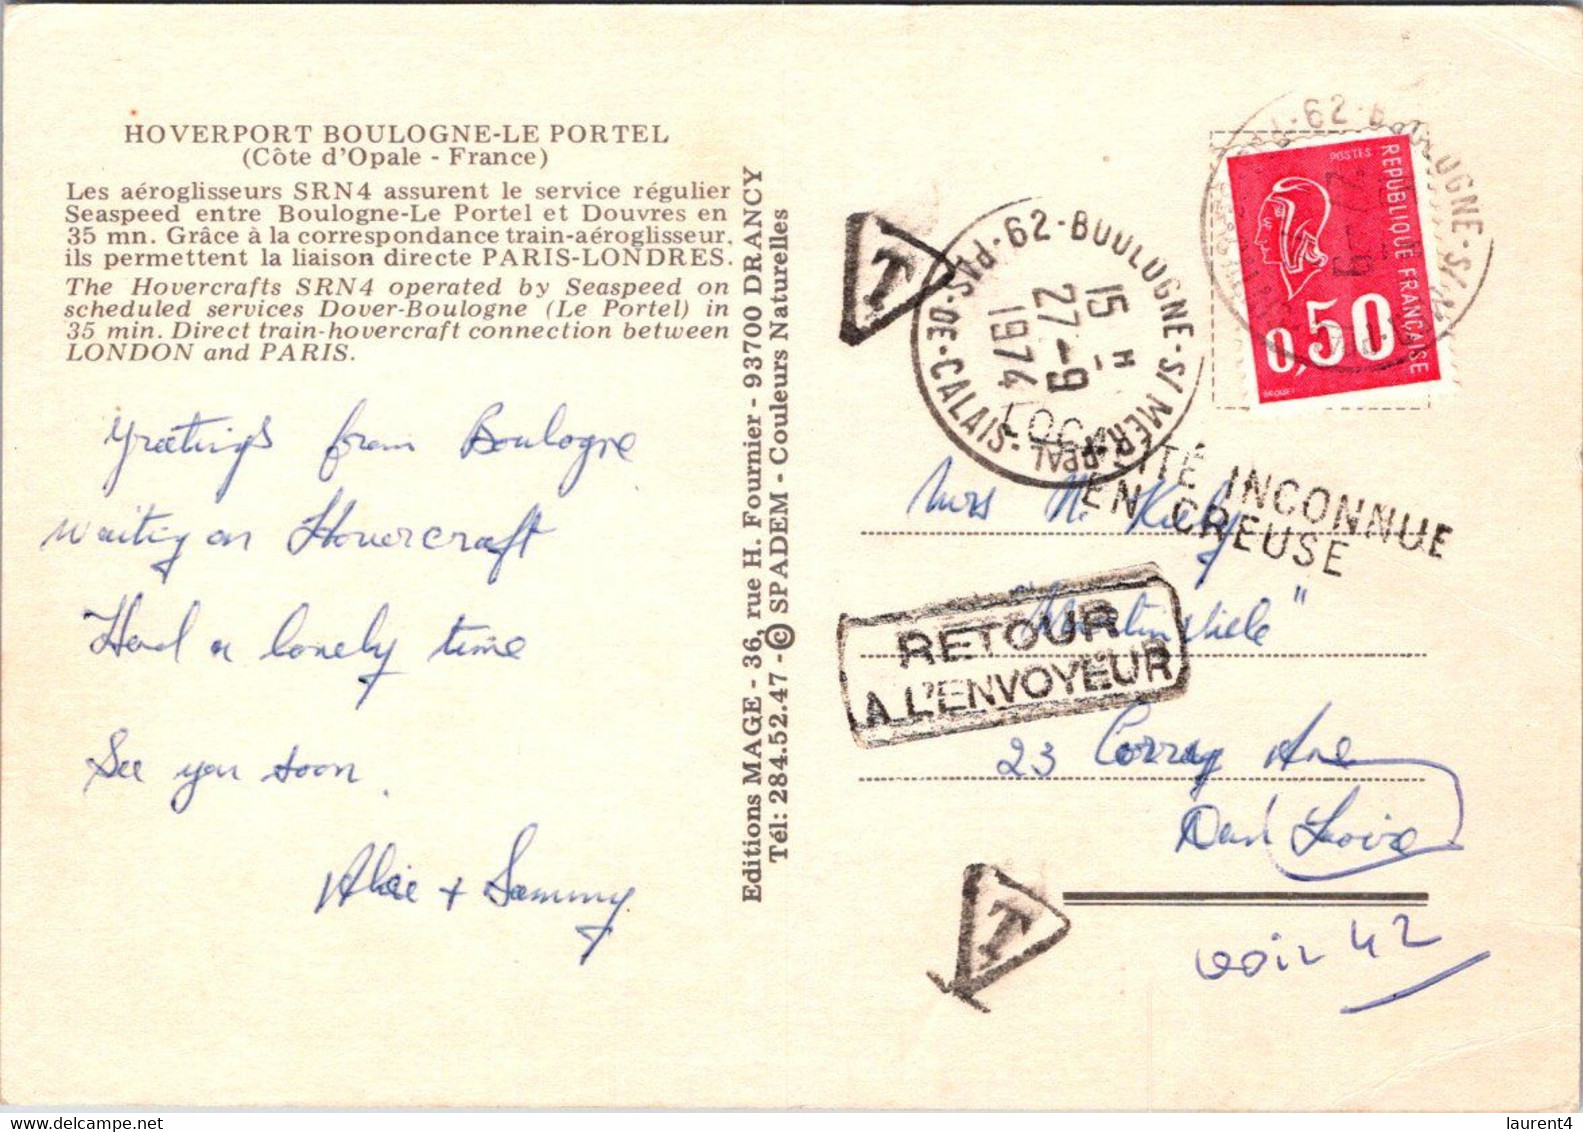 (1 Oø 37) France - Hoverport Boulogne Le Portel - (posted 1974) TAXED - Returned To Sender / RTS - Hovercraft